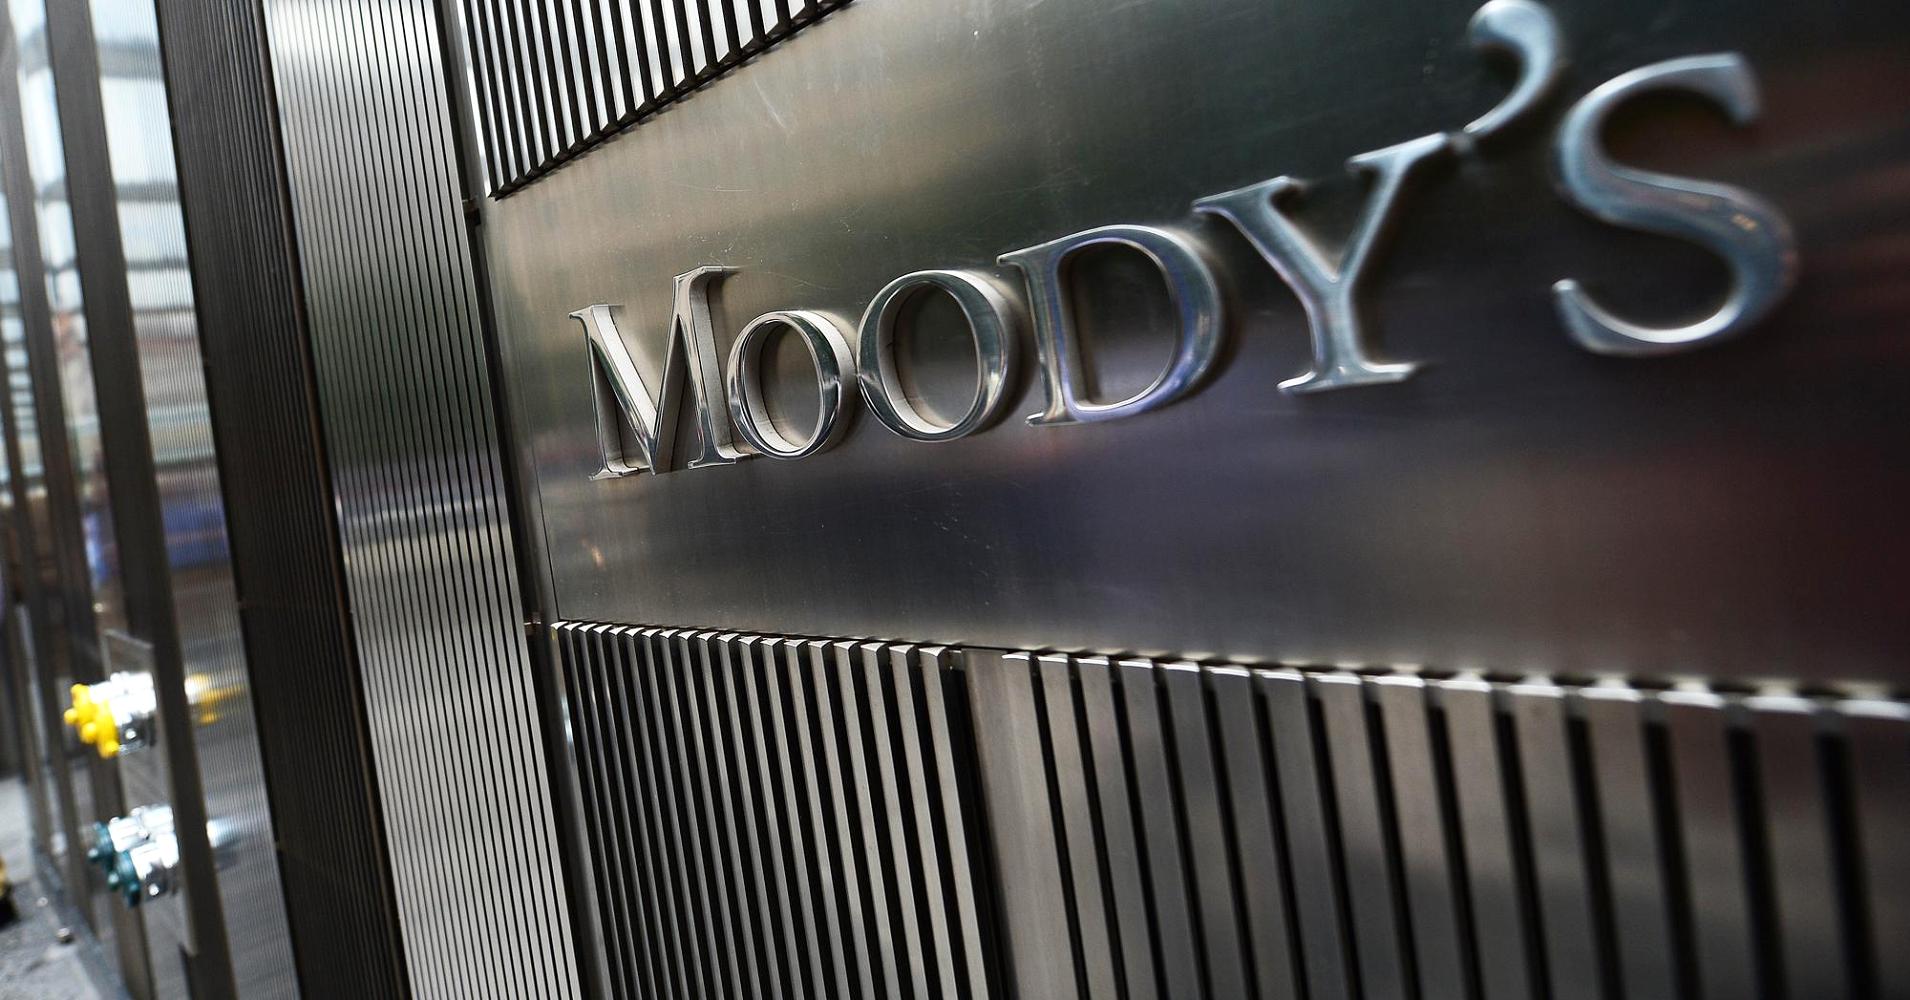 A héten vizsgálja a magyar adósosztályzatot a Moody's